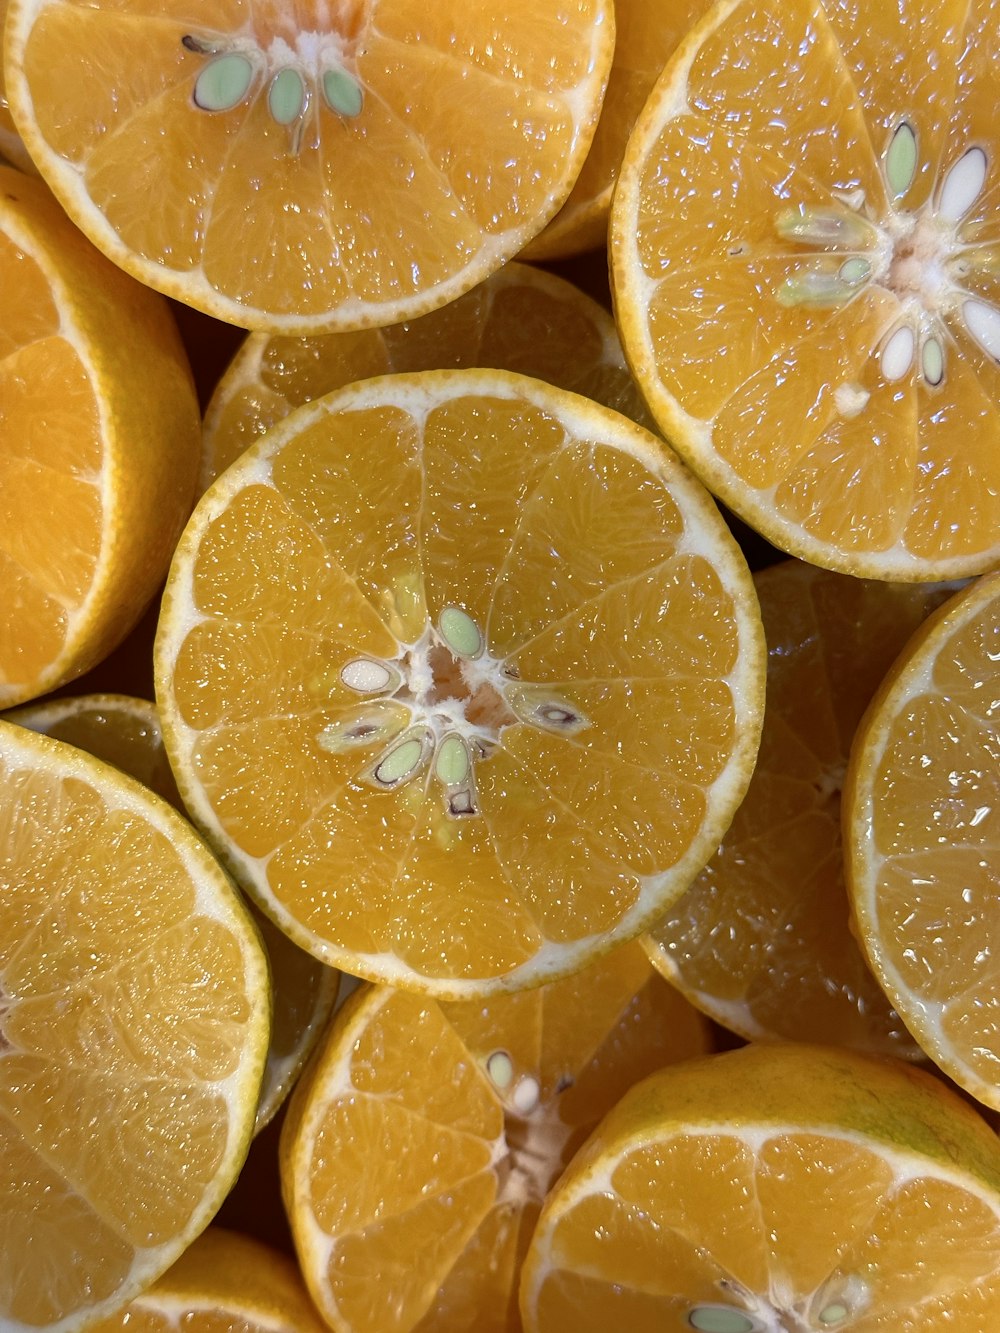 a pile of oranges